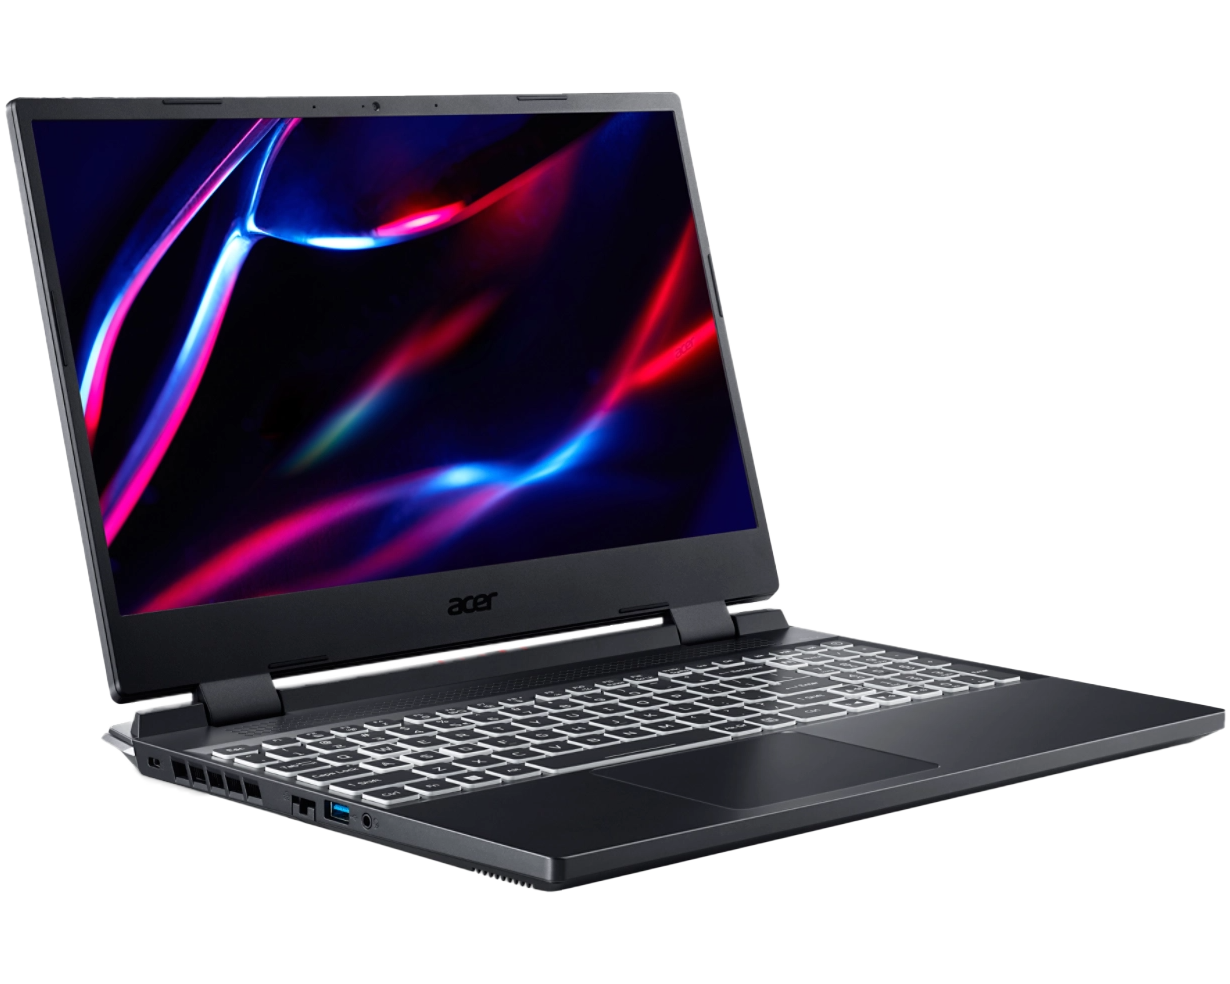 Acer Nitro AN515-46-R4W2 - Laptop Tiangge